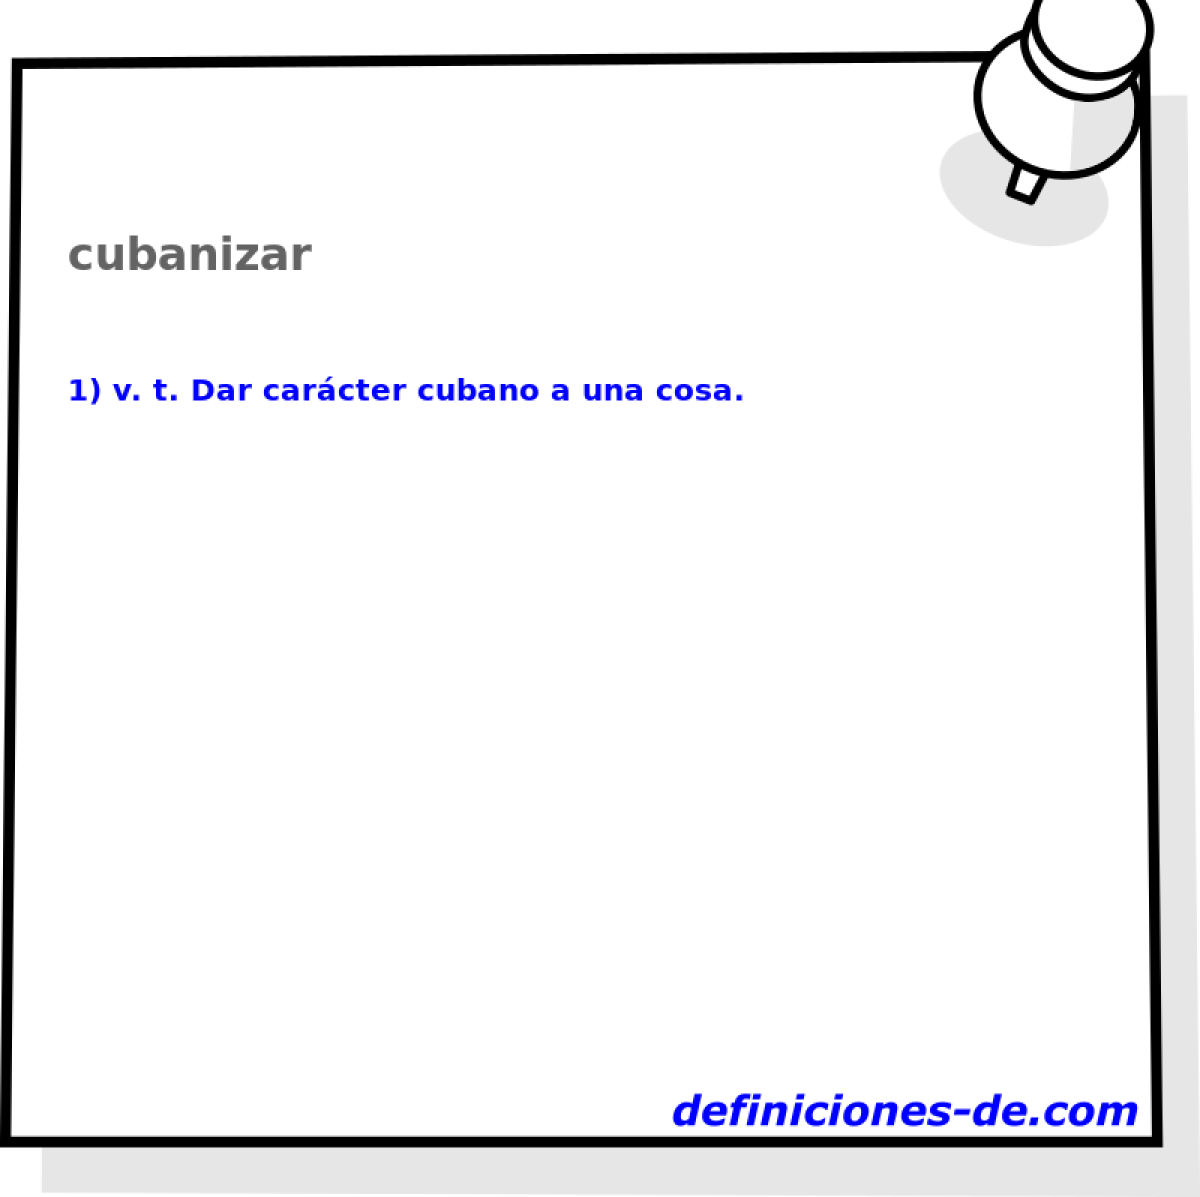 cubanizar 